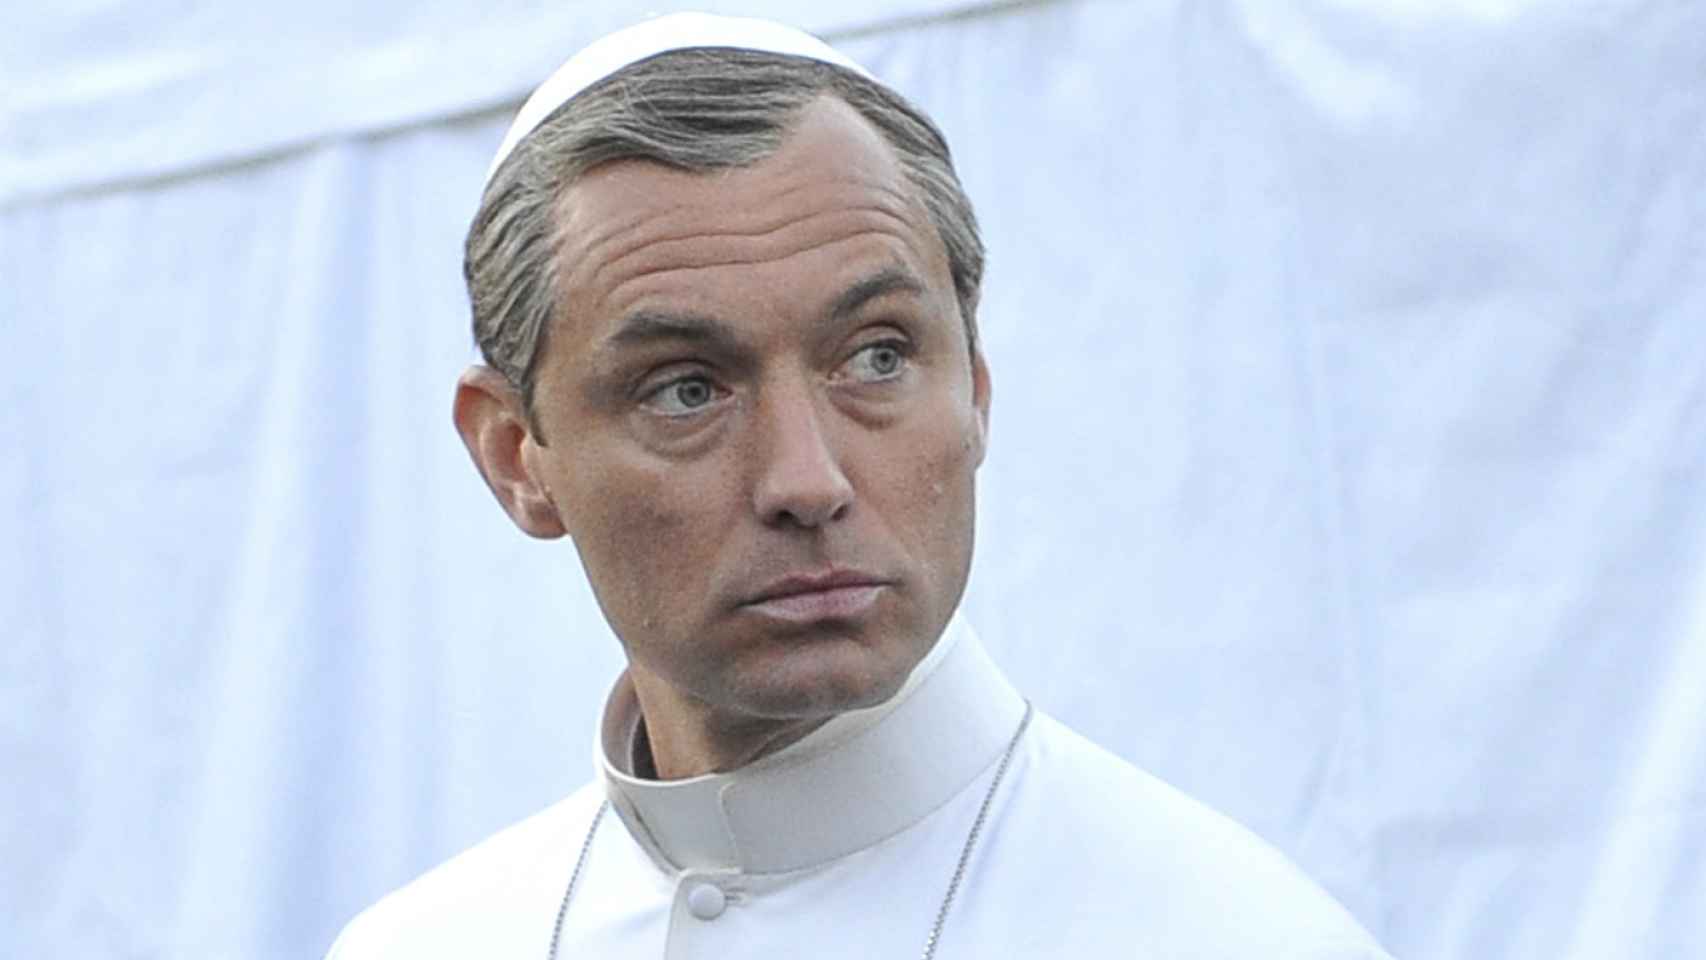 Jude Law en el set de rodaje de The Young Pope en Venecia